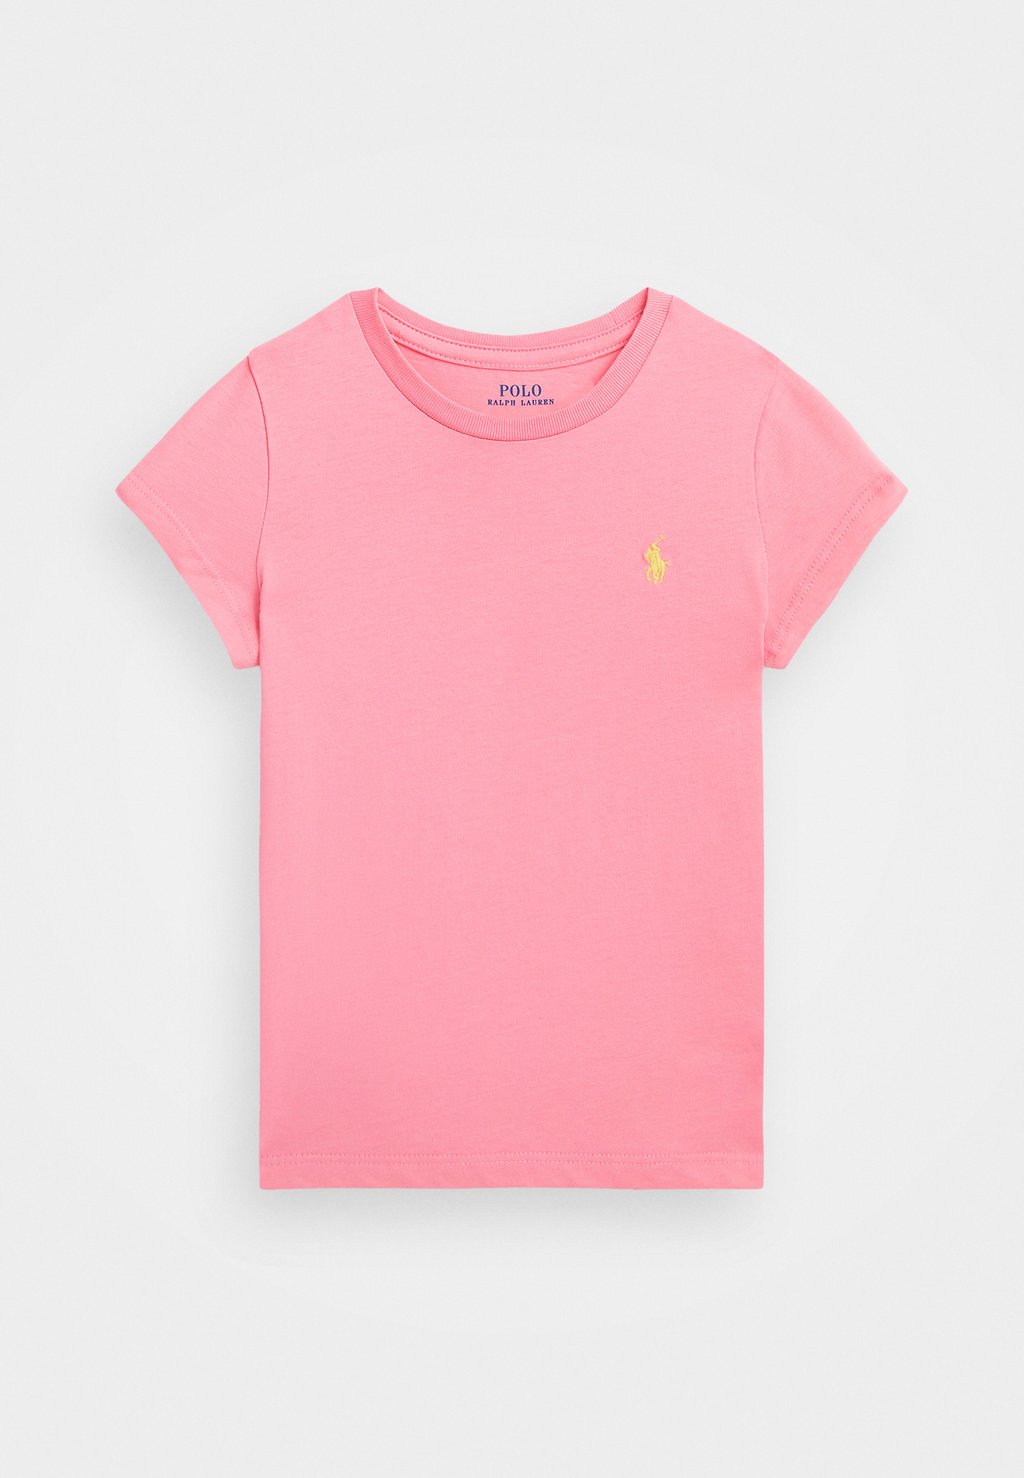 Базовая футболка Tee Polo Ralph Lauren, цвет florida pink groff lauren florida